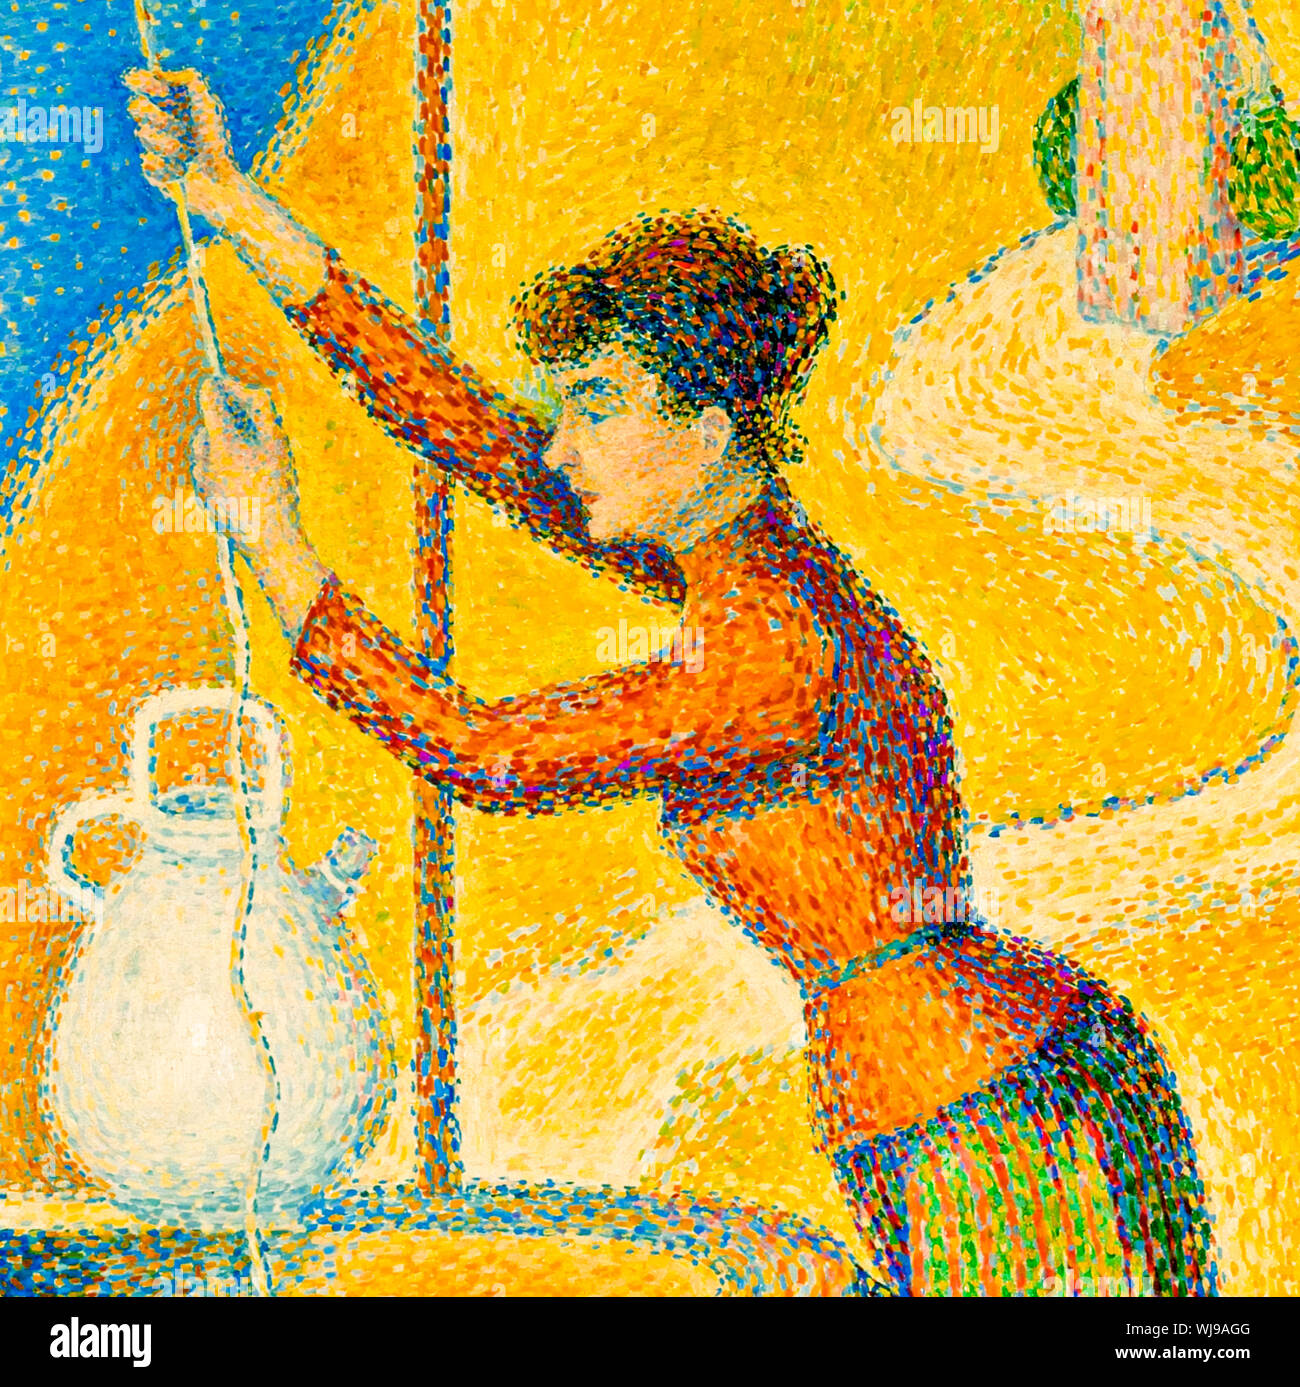 La técnica puntillista: Paul Signac, la mujer en el pozo, pintura 1892 Foto de stock